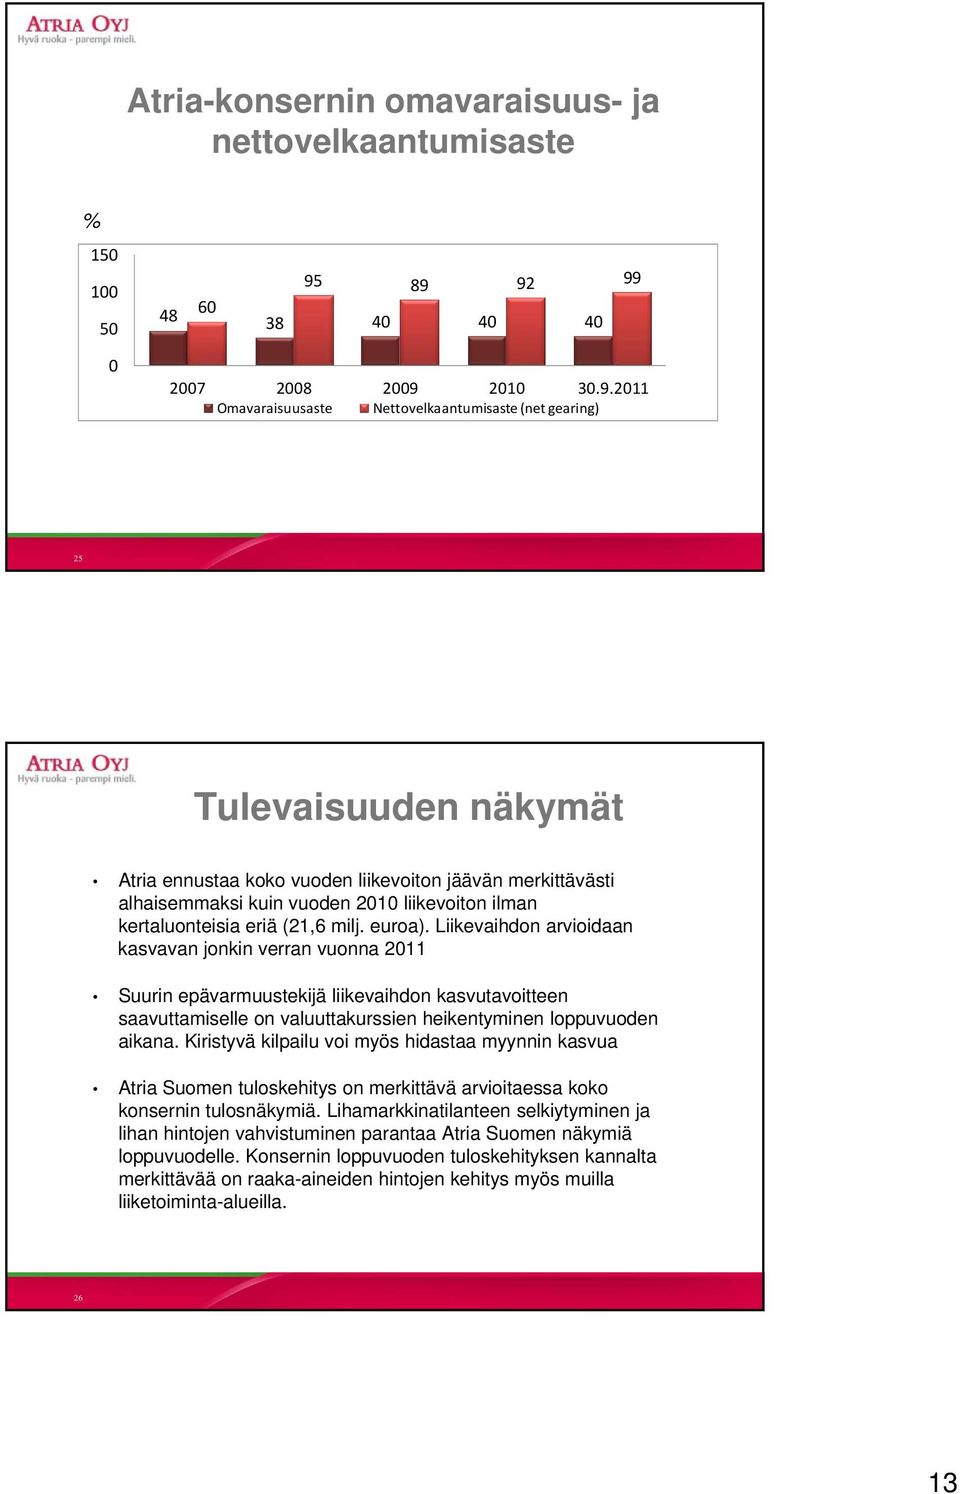 alhaisemmaksi kuin vuoden 2010 liikevoiton ilman kertaluonteisia eriä (21,6 milj. euroa).